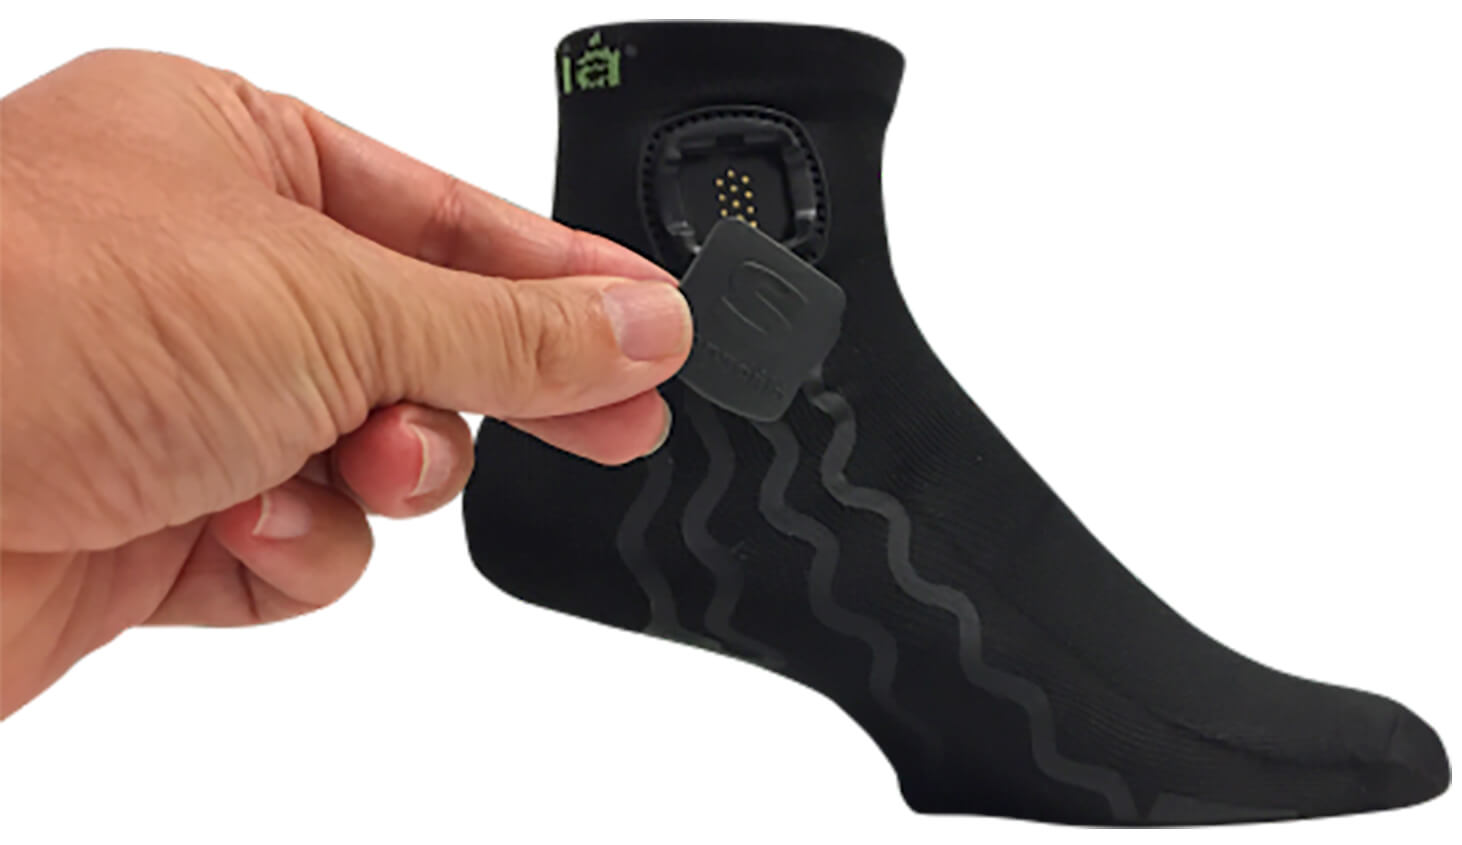 Sensoria smart socks